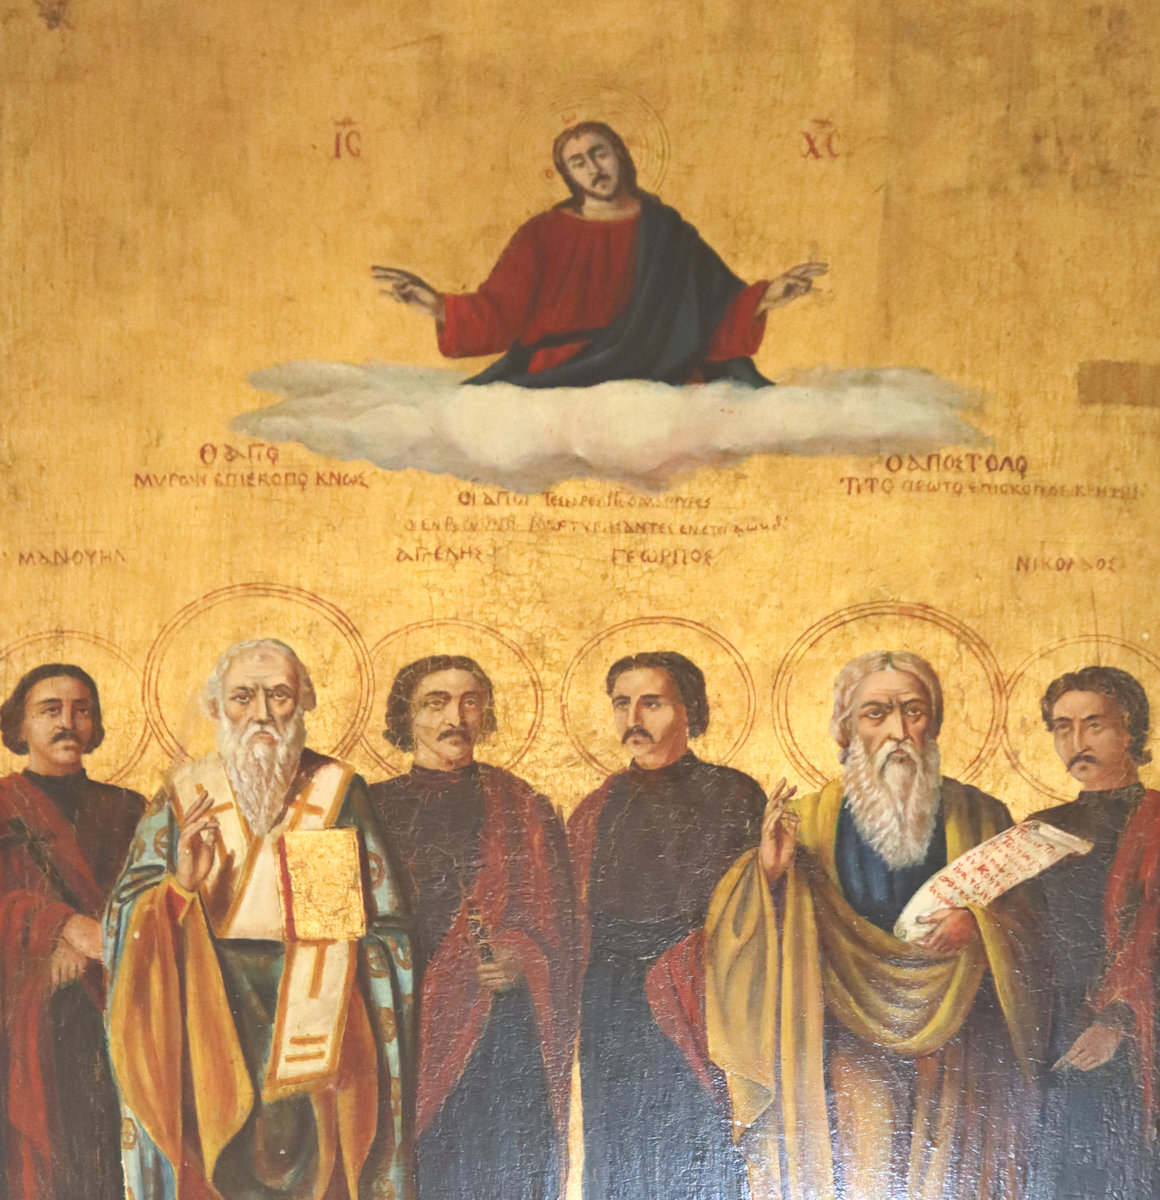 Manuel, Bischof Myron von Knossos, Angelis, Georgios, „Apostel” Titus und Nikolaos (von links nach rechts), Ikone im Kloster Arkadi